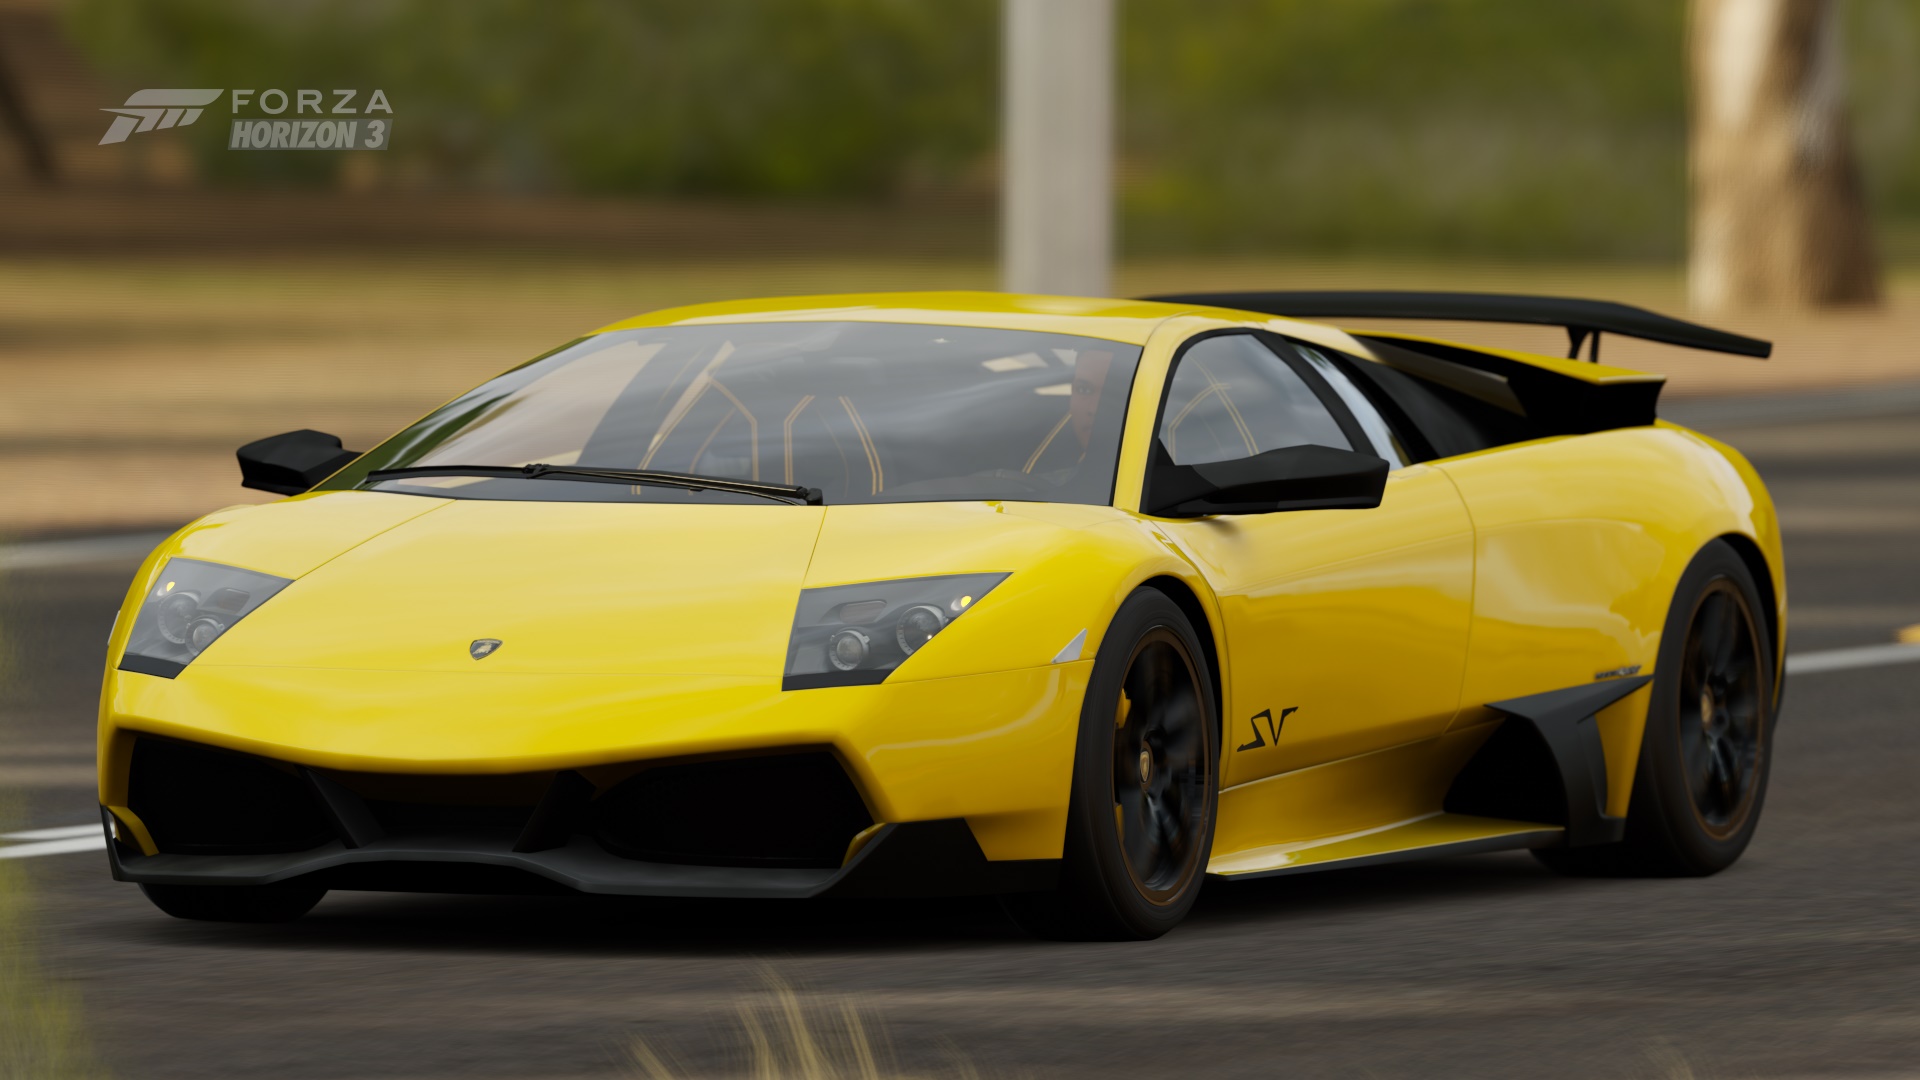 Download mobile wallpaper Lamborghini, Lamborghini Murcielago, Video Game, Lamborghini Murcielago Lp670 4 Sv, Forza Horizon 3, Forza for free.